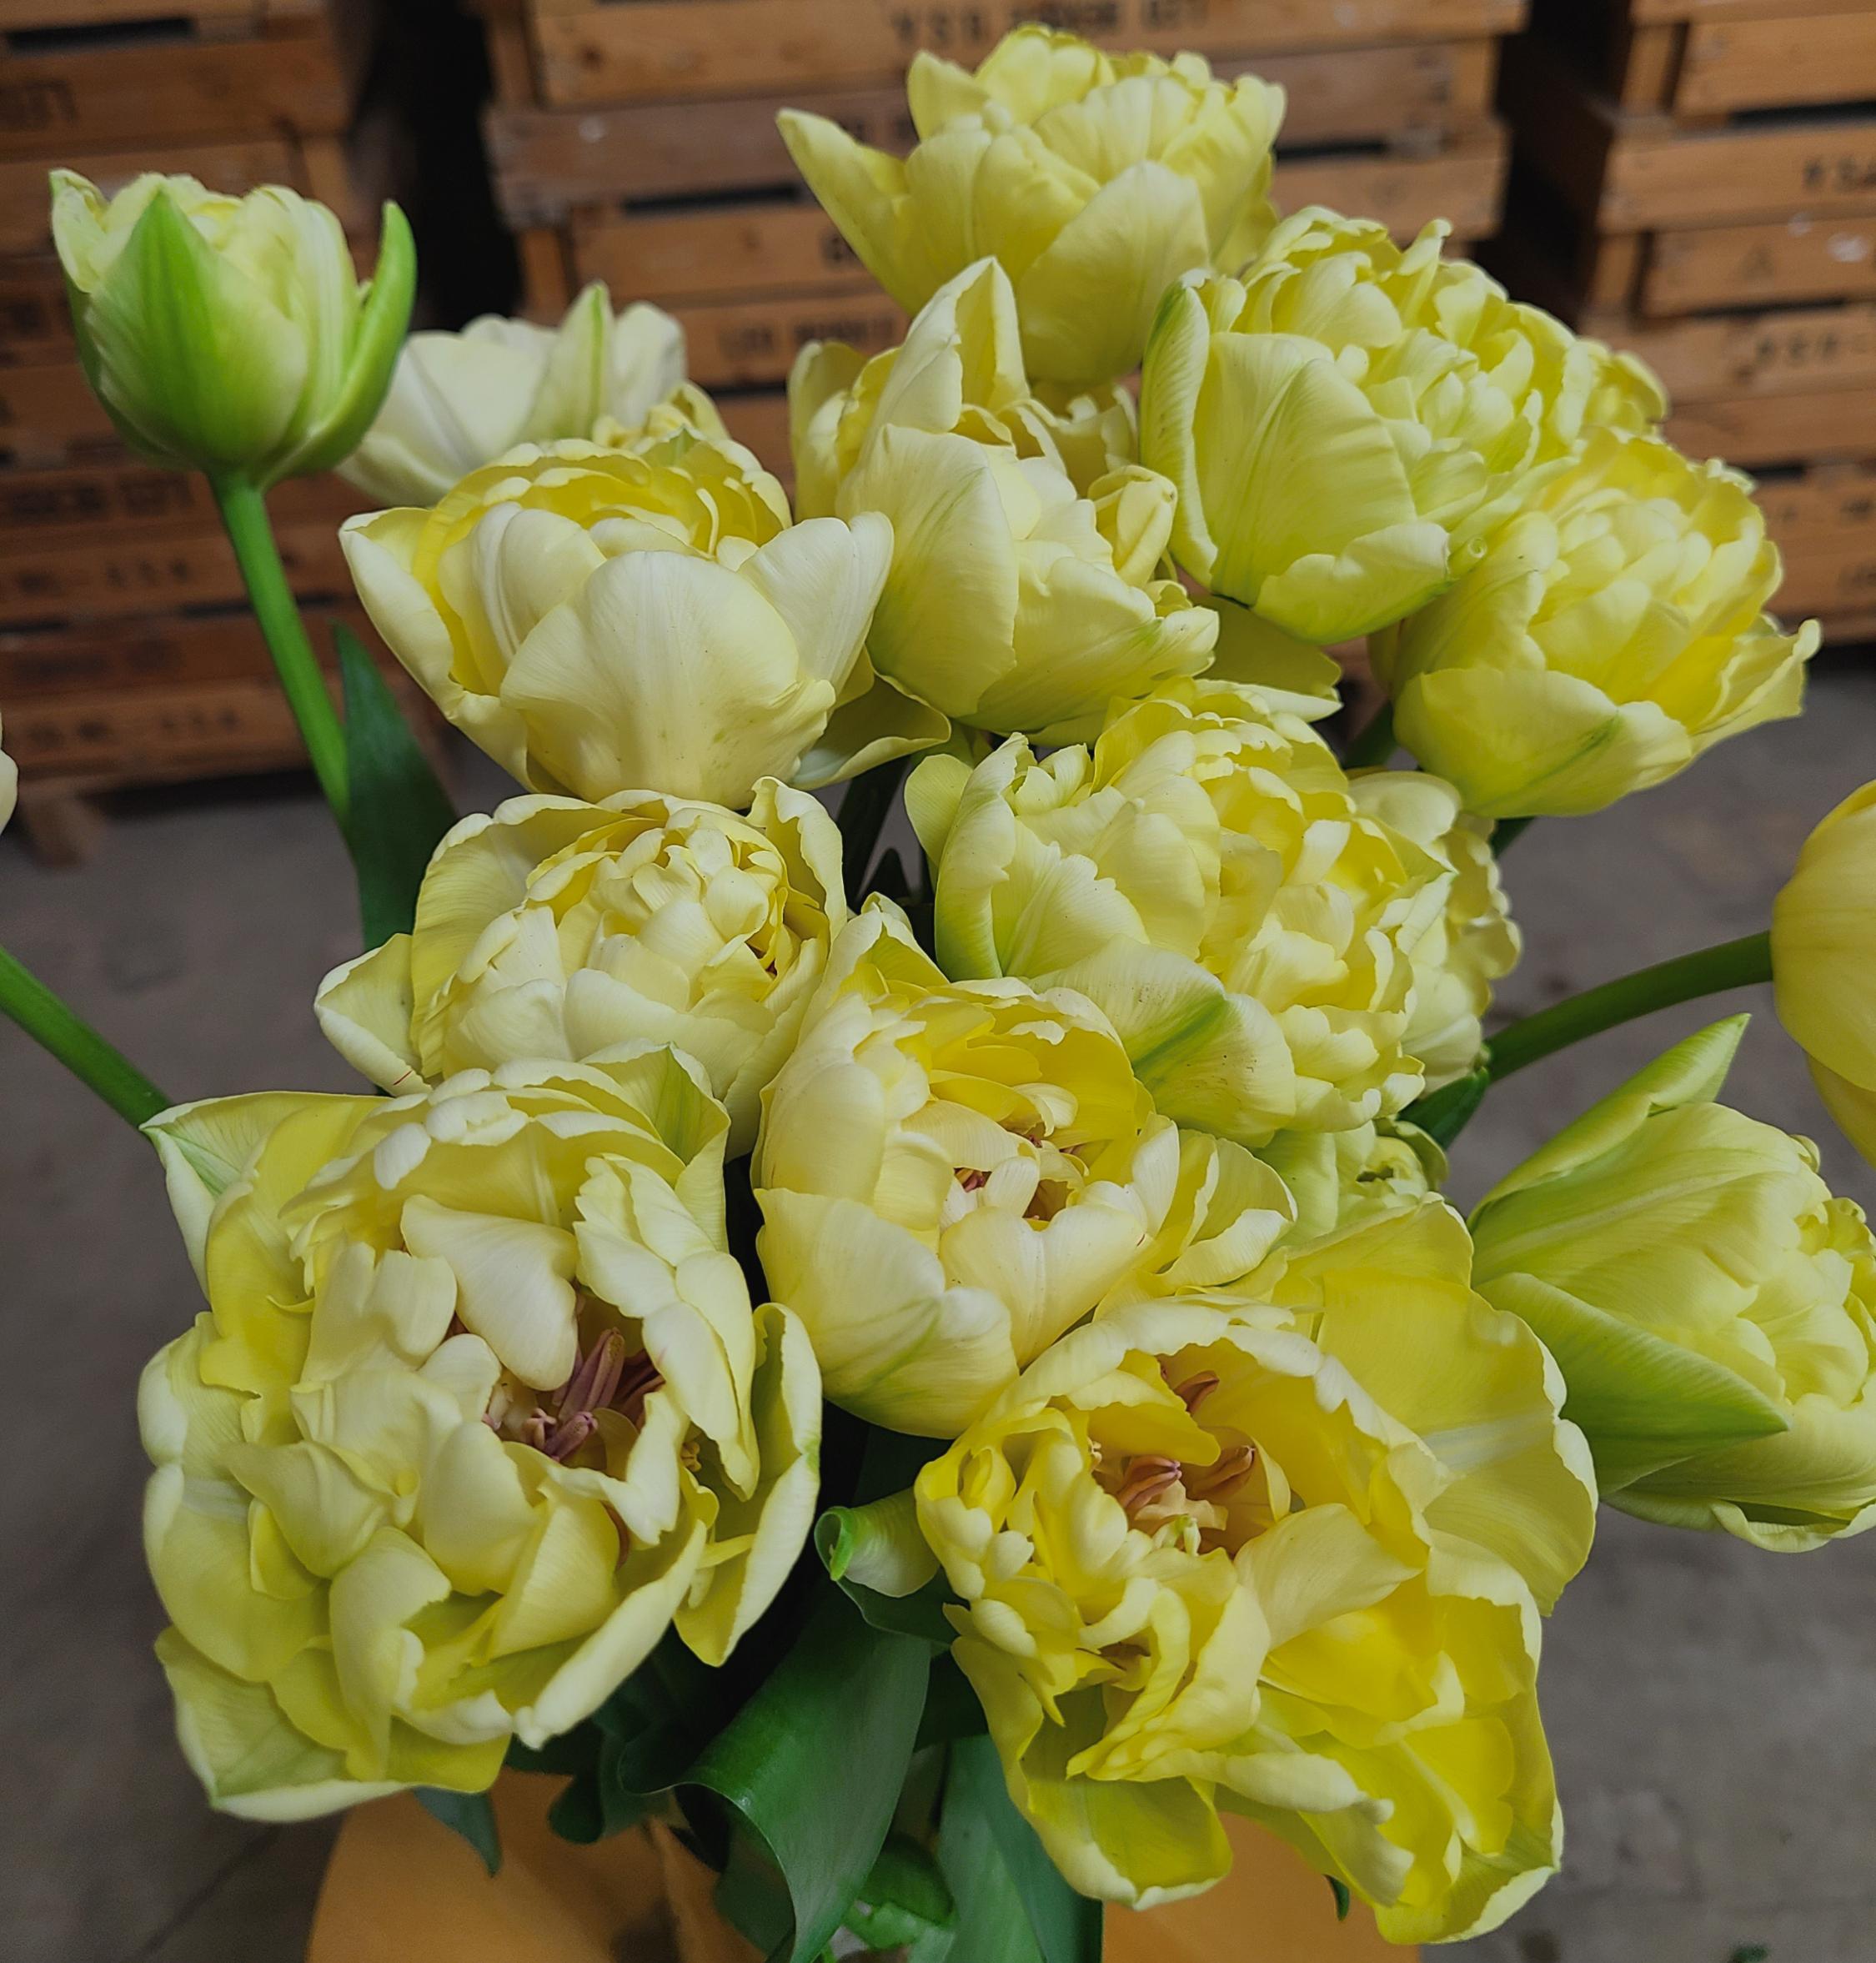 Tulip Double Early 'Avant Garde' - Tulip from Leo Berbee Bulb Company